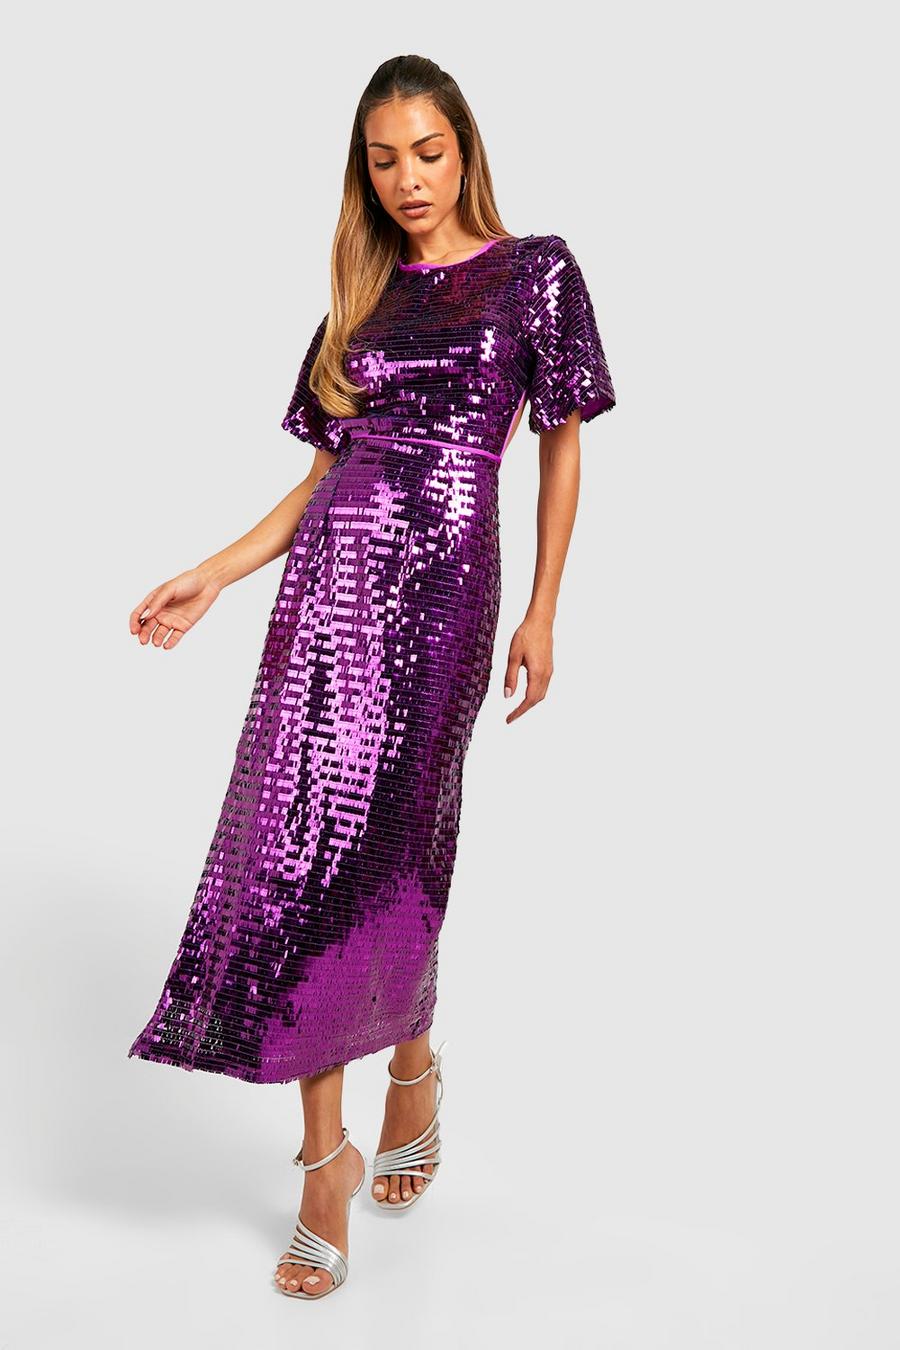 Robe pailletée à découpes et manches larges, Jewel purple